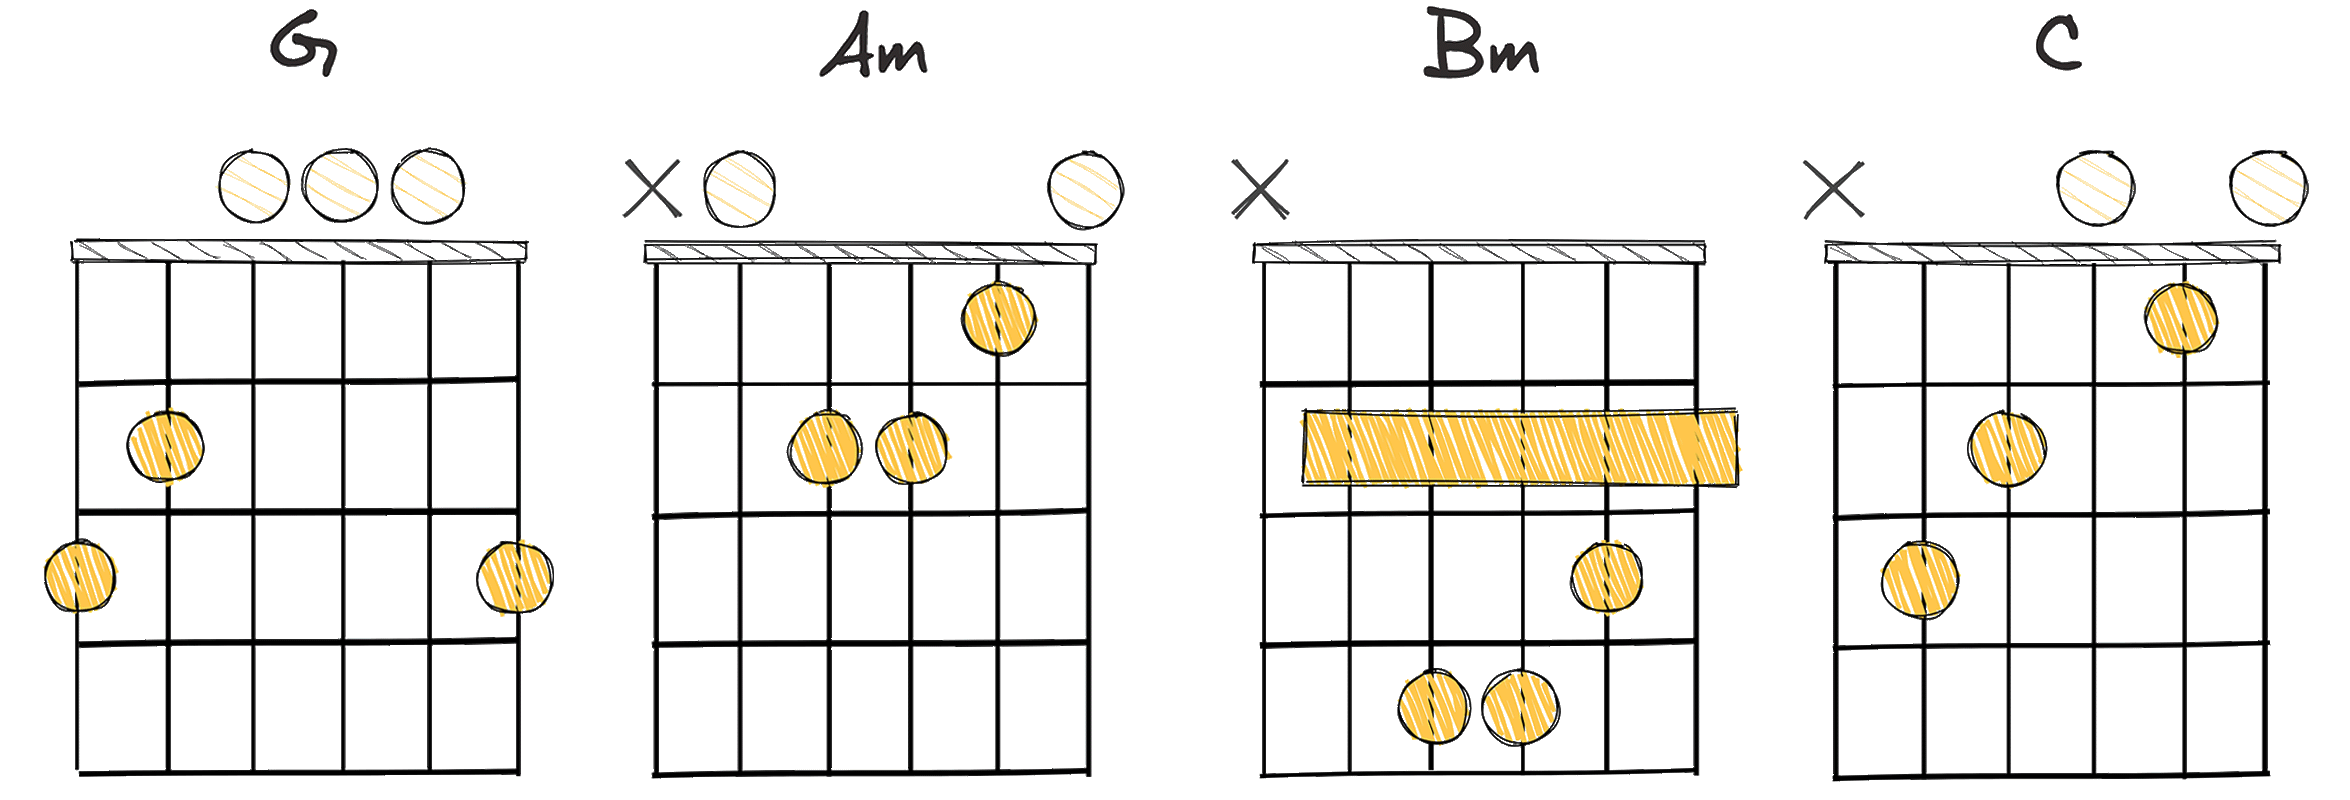 I-ii-iii-IV (1-2-3-4) chords diagram